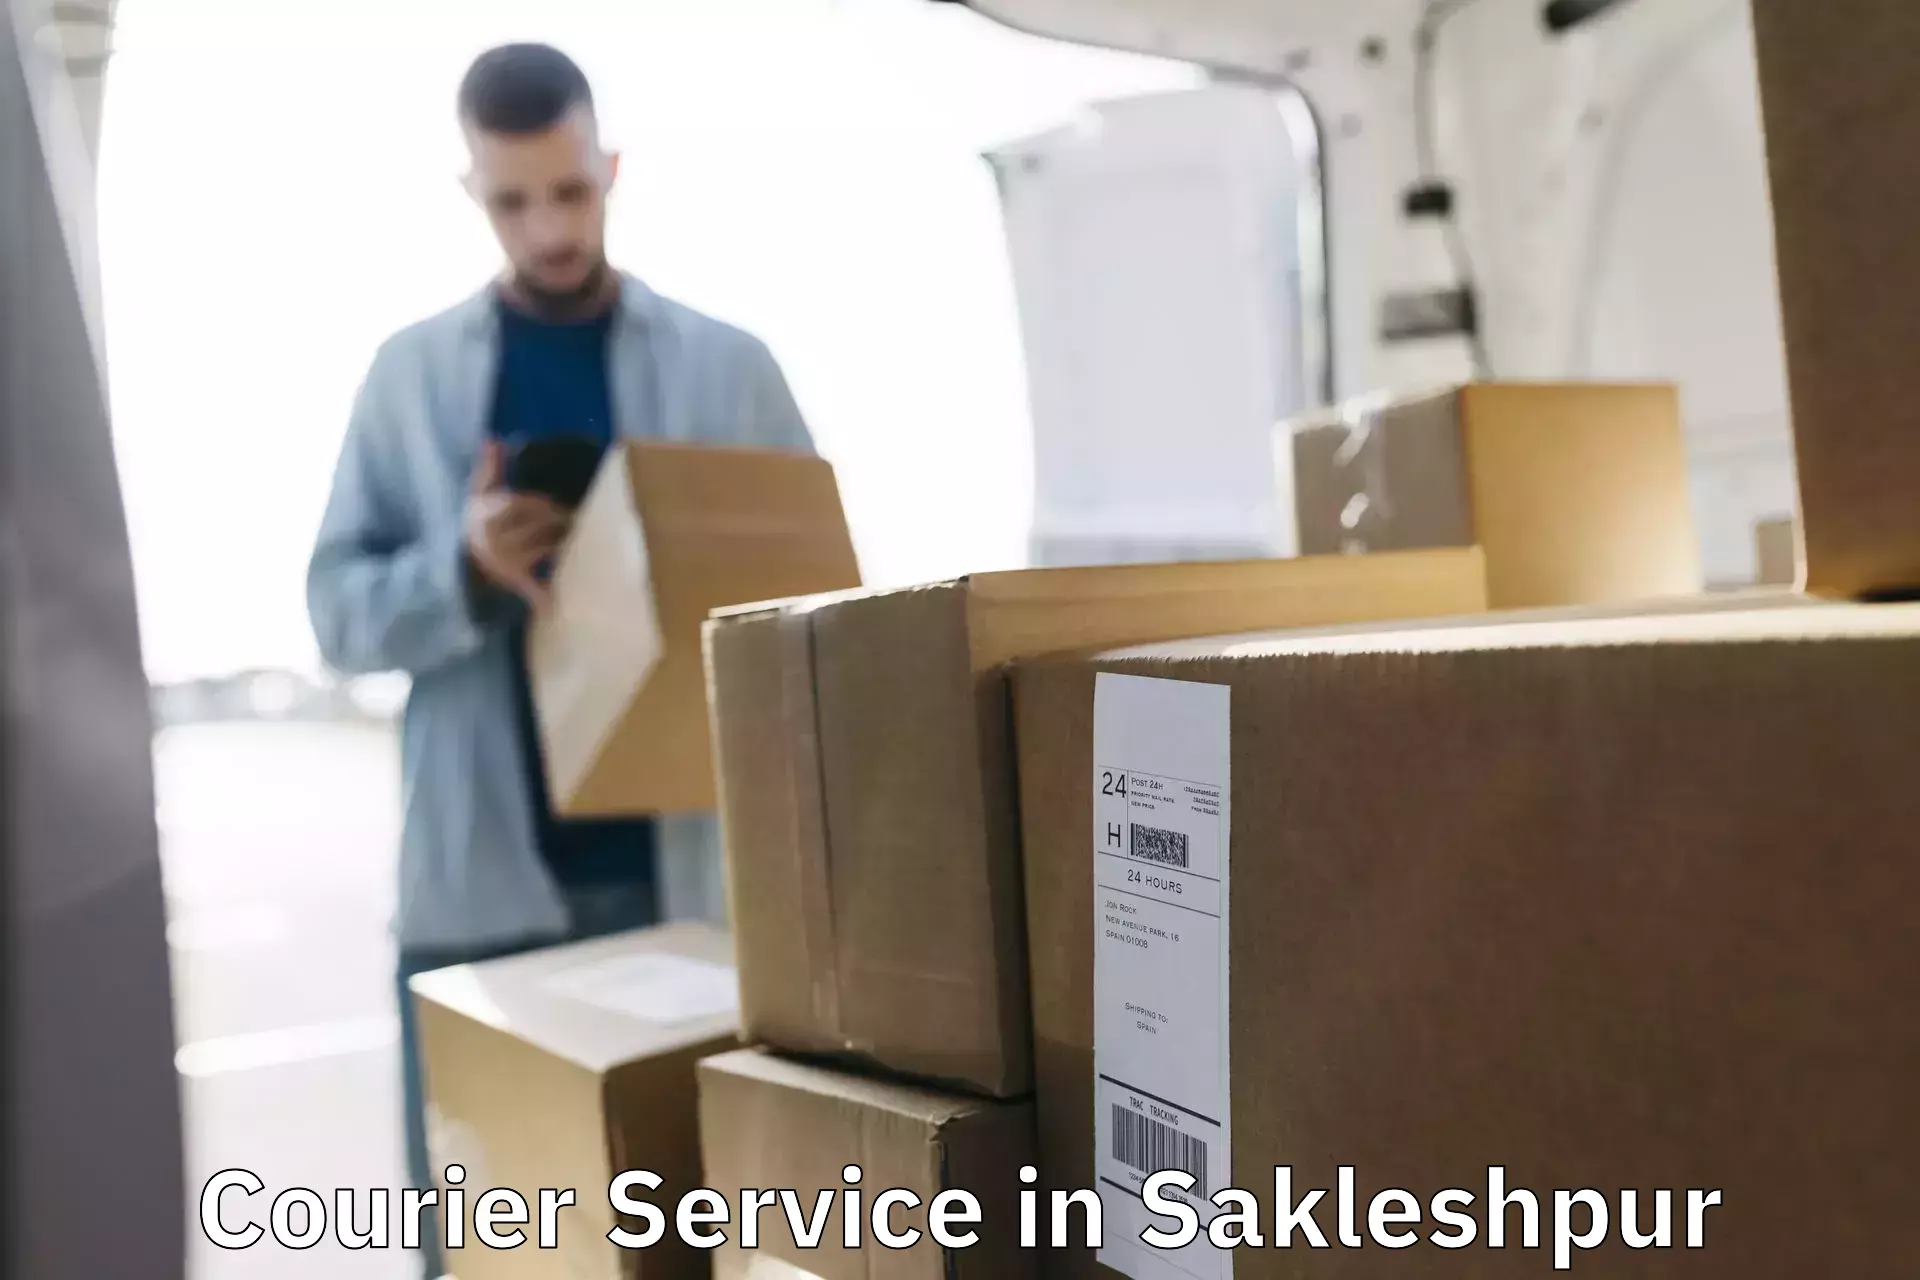 Efficient cargo services in Sakleshpur